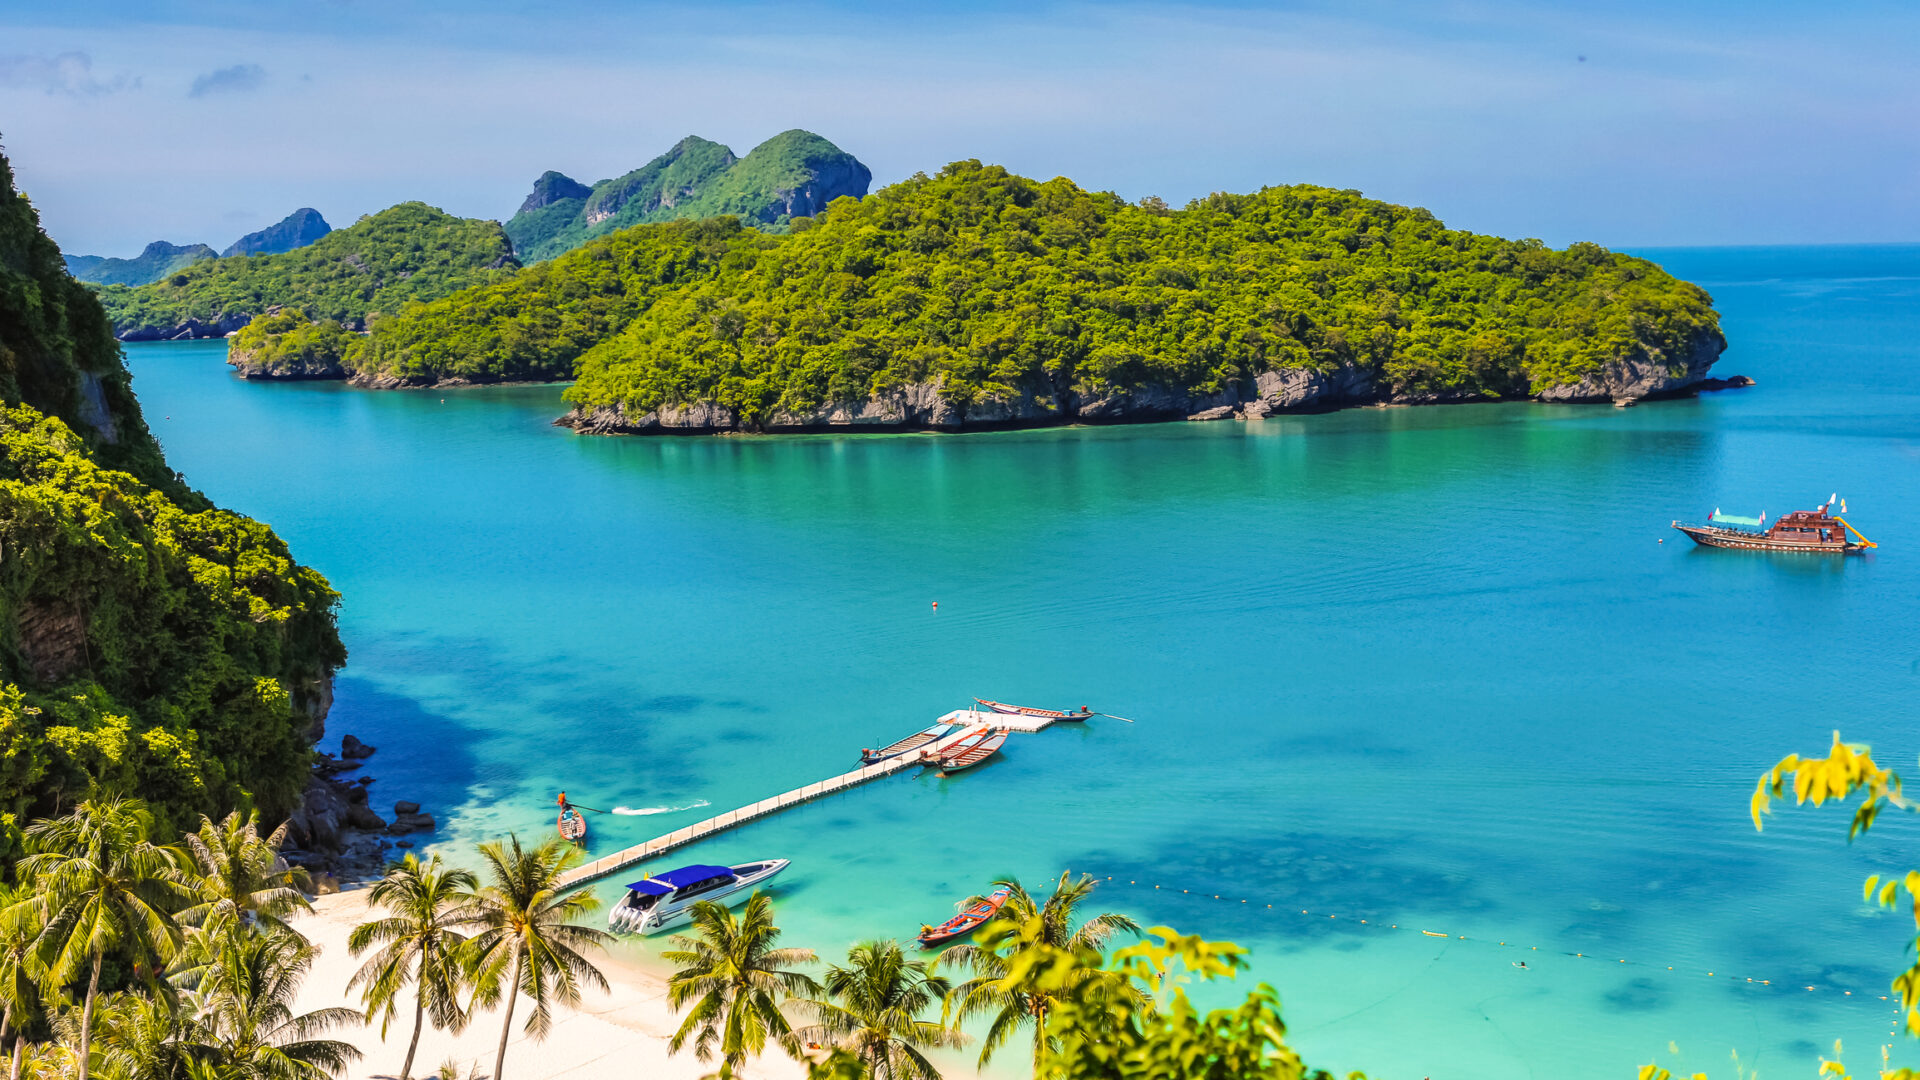 Koh Phangan Island, Thailand i april. Strande, palmetræer og turkisblåt hav. Overnatningsmuligheder, vejrforhold og transportmuligheder til